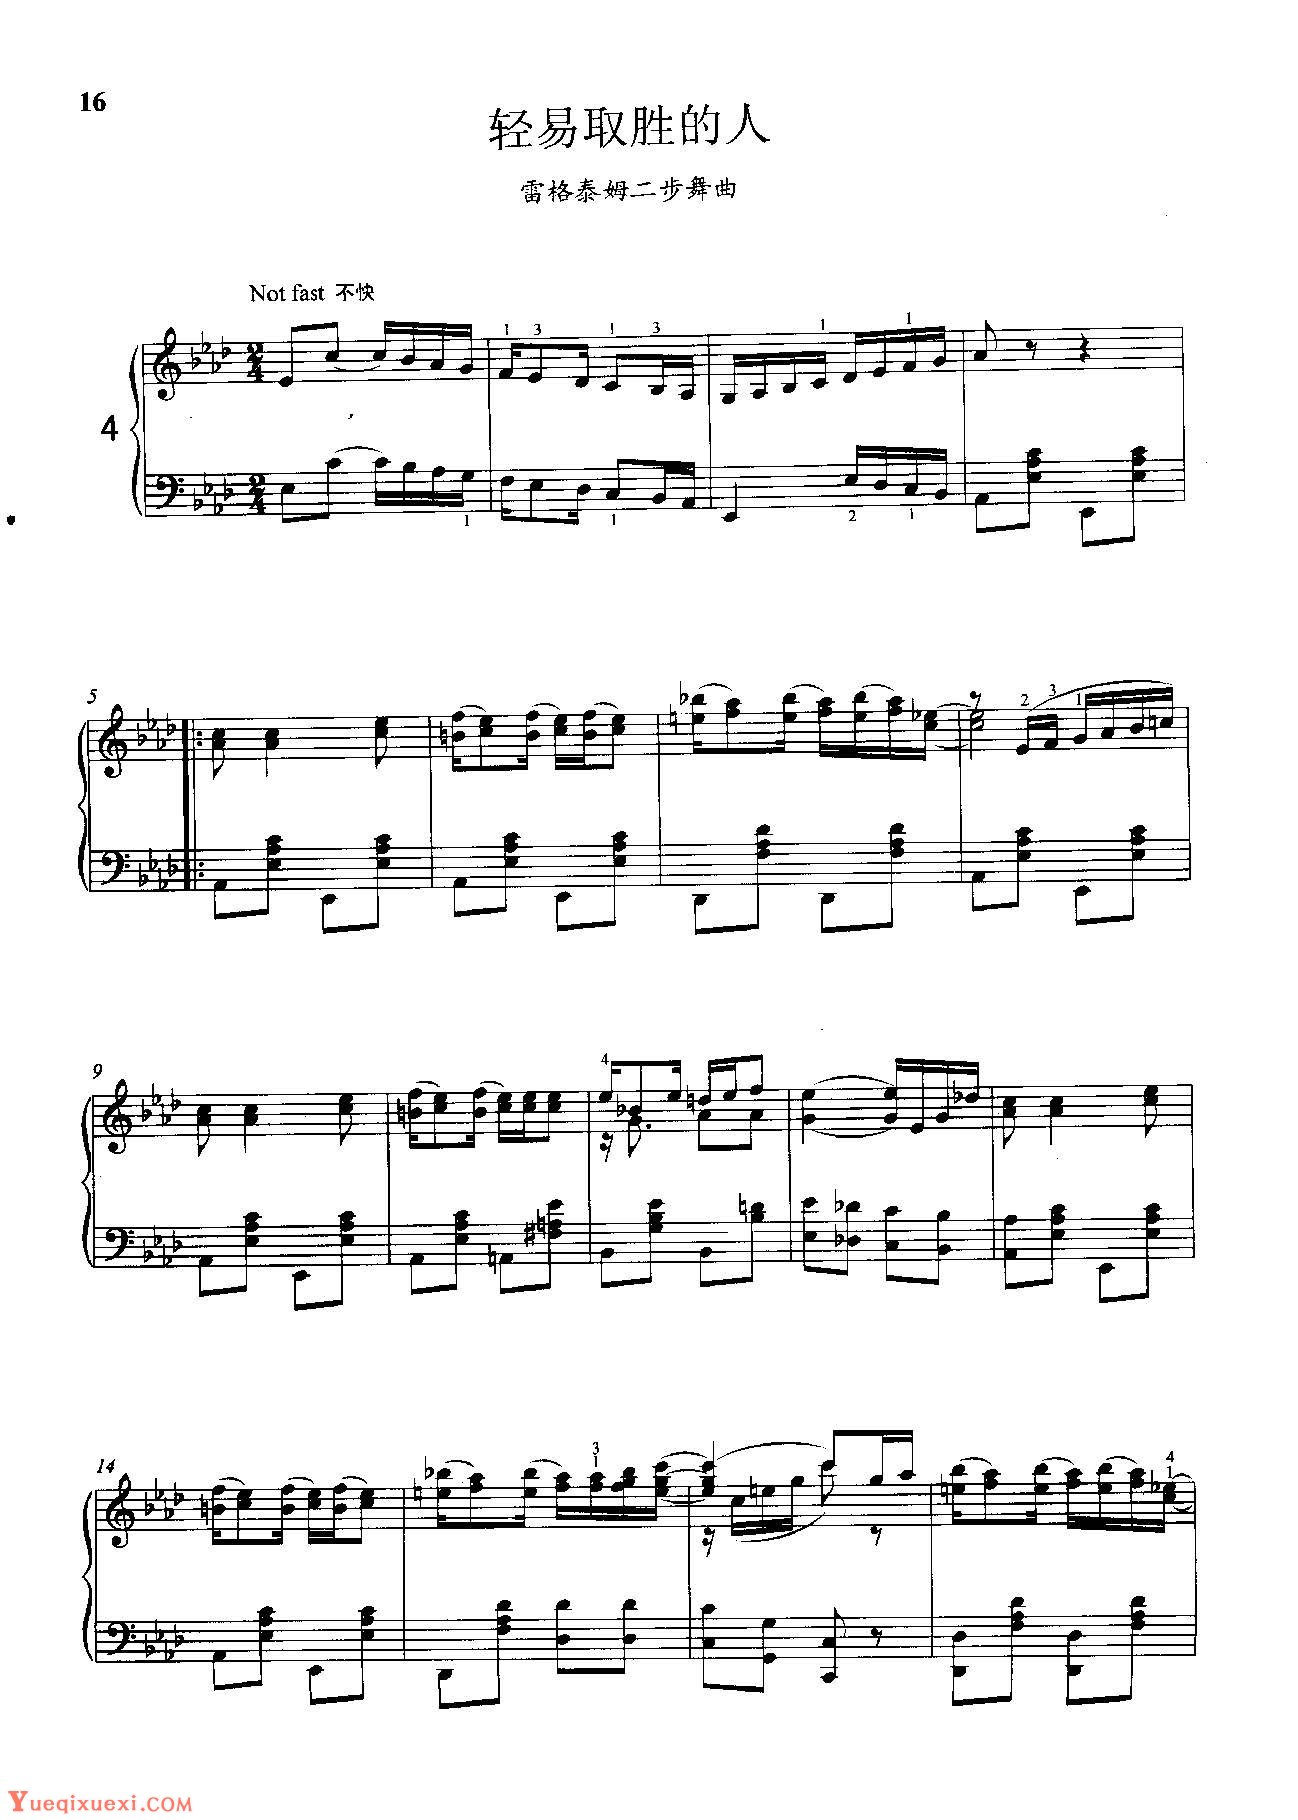 雷格泰姆钢琴乐谱《轻易取胜的人》雷格泰姆之王斯科特·乔普林